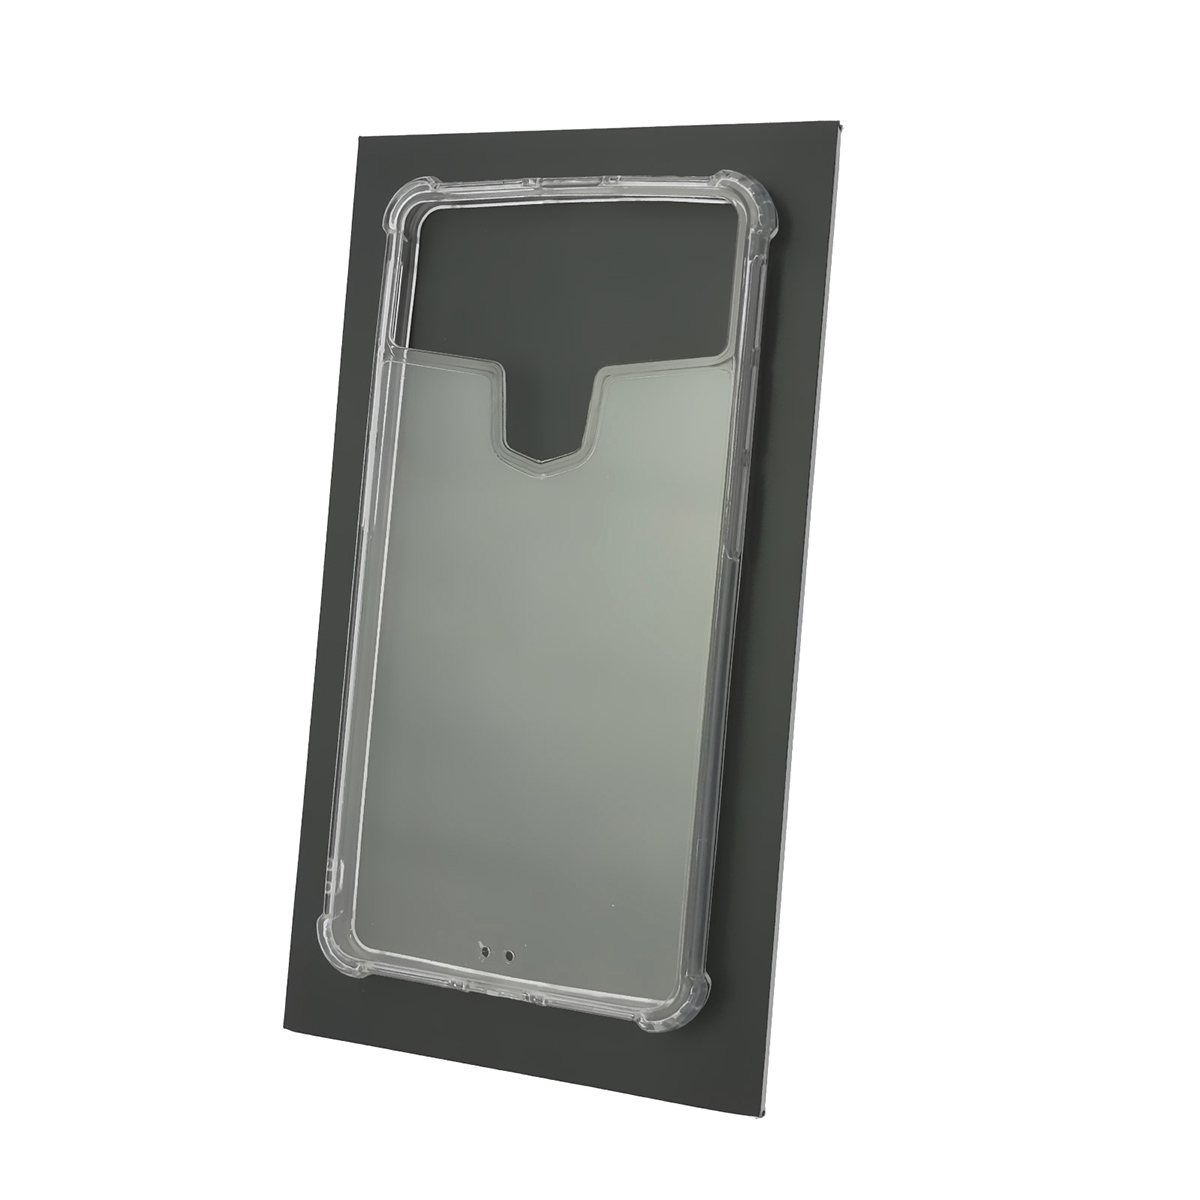 Чехол накладка универсальная TPU CASE для смартфонов размером 5.6 - 5.9, N3, силикон, цвет прозрачный.